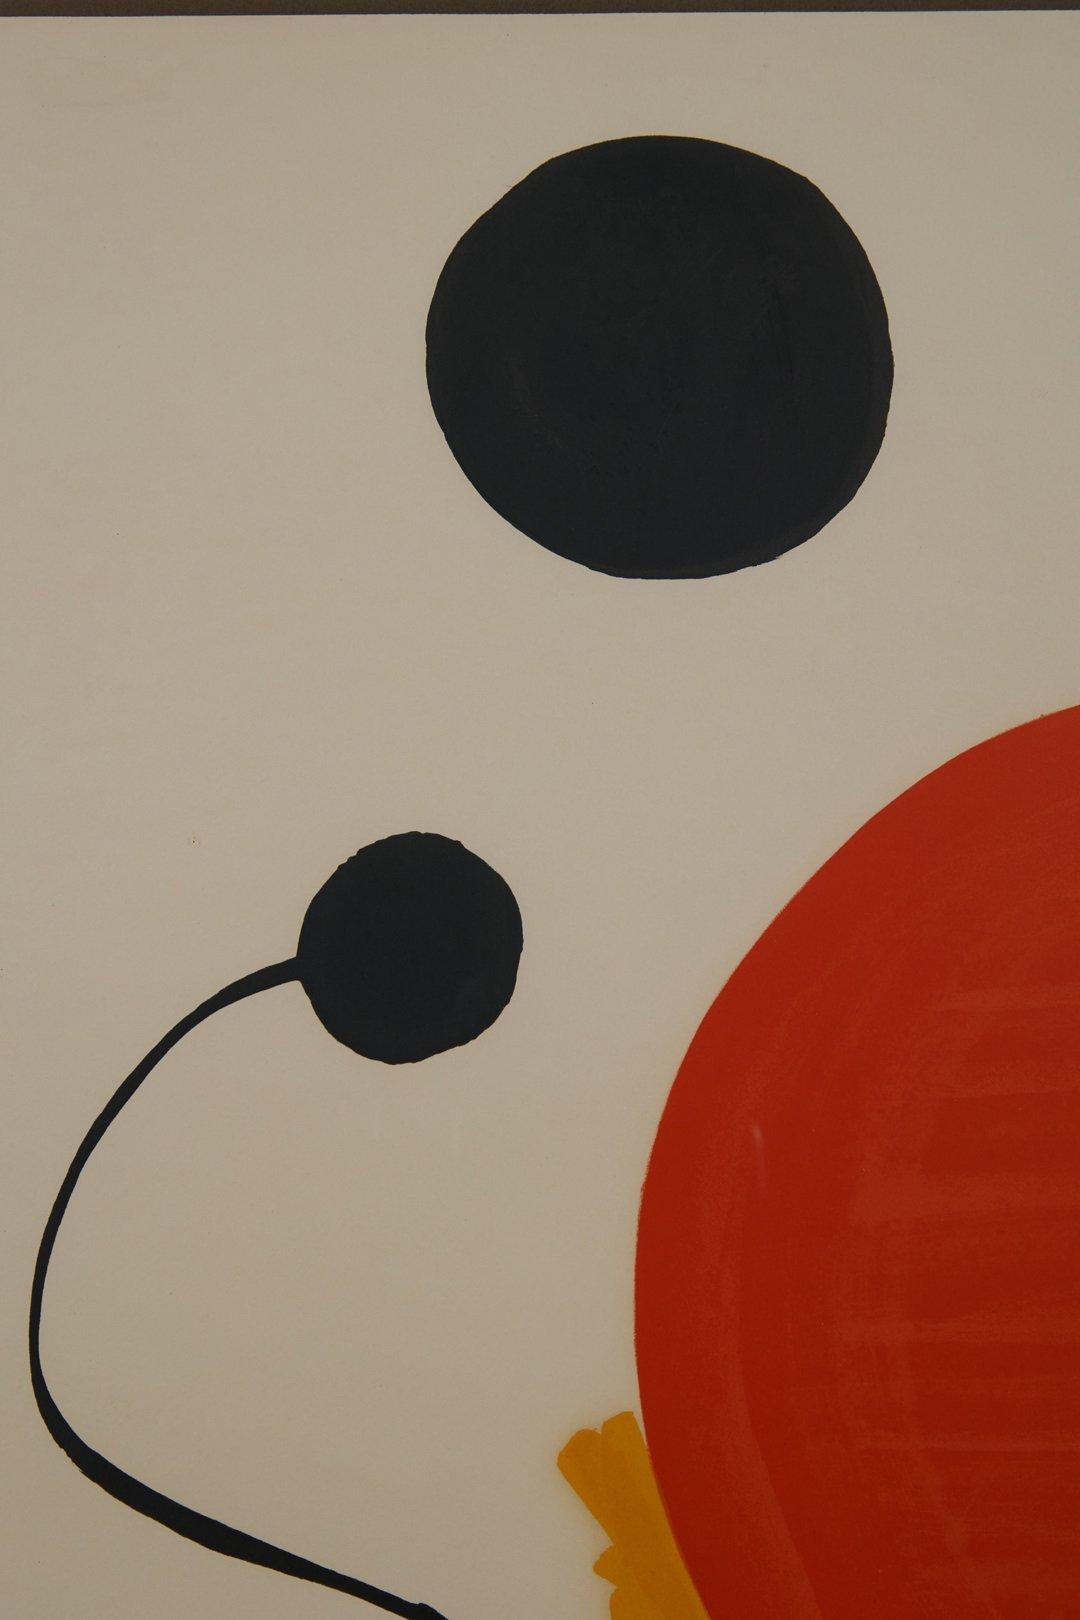 Alexander Calder (Américain, 1898-1976)
Sphère rouge sur fond jaune, c.C. 1970
Lithographie en couleurs
Édition : 74/150
22 x 30 pouces
37.5 x 29.5 pouces, encadré

L'un des sculpteurs américains les plus connus, 